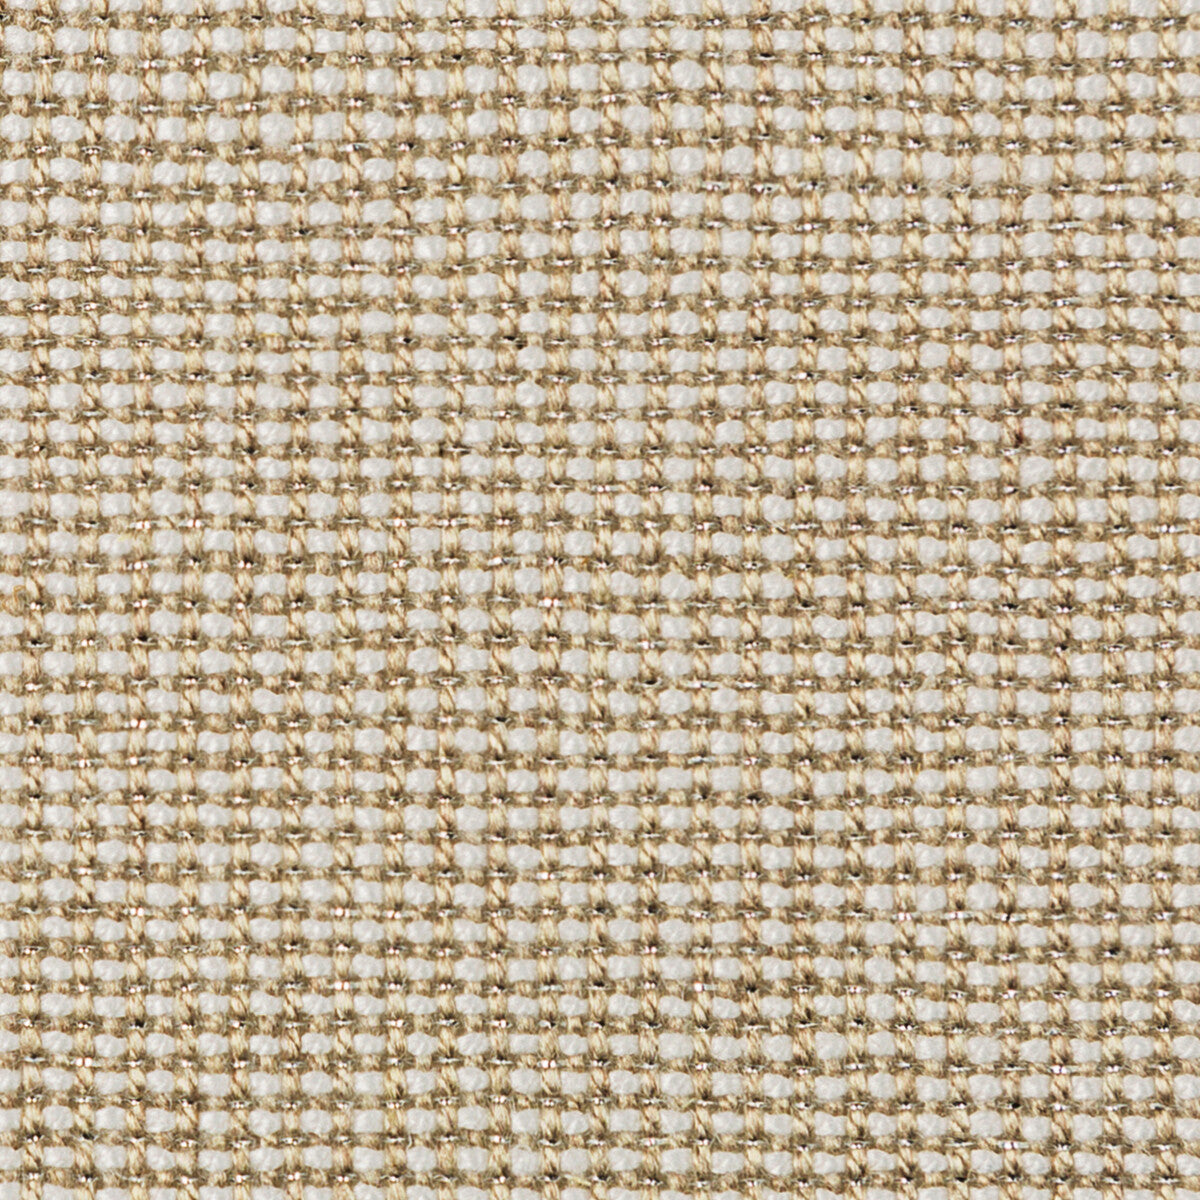 Kravet Basics fabric in 35785-1611 color - pattern 35785.1611.0 - by Kravet Basics